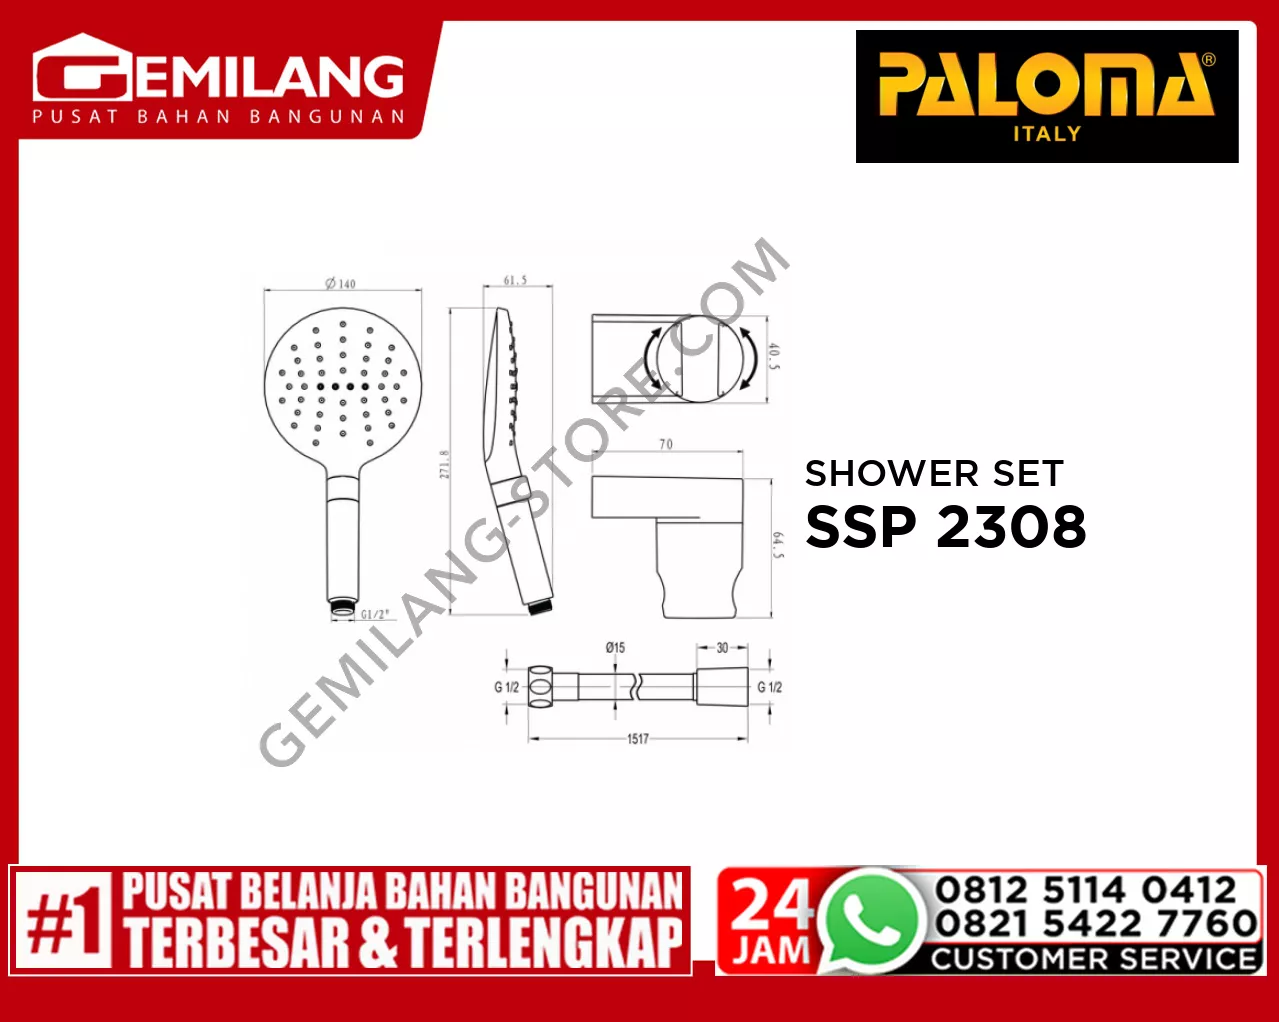 PALOMA SHOWER SET W/HOLDER 3 JETS PRO-SWITCH SSP 2308